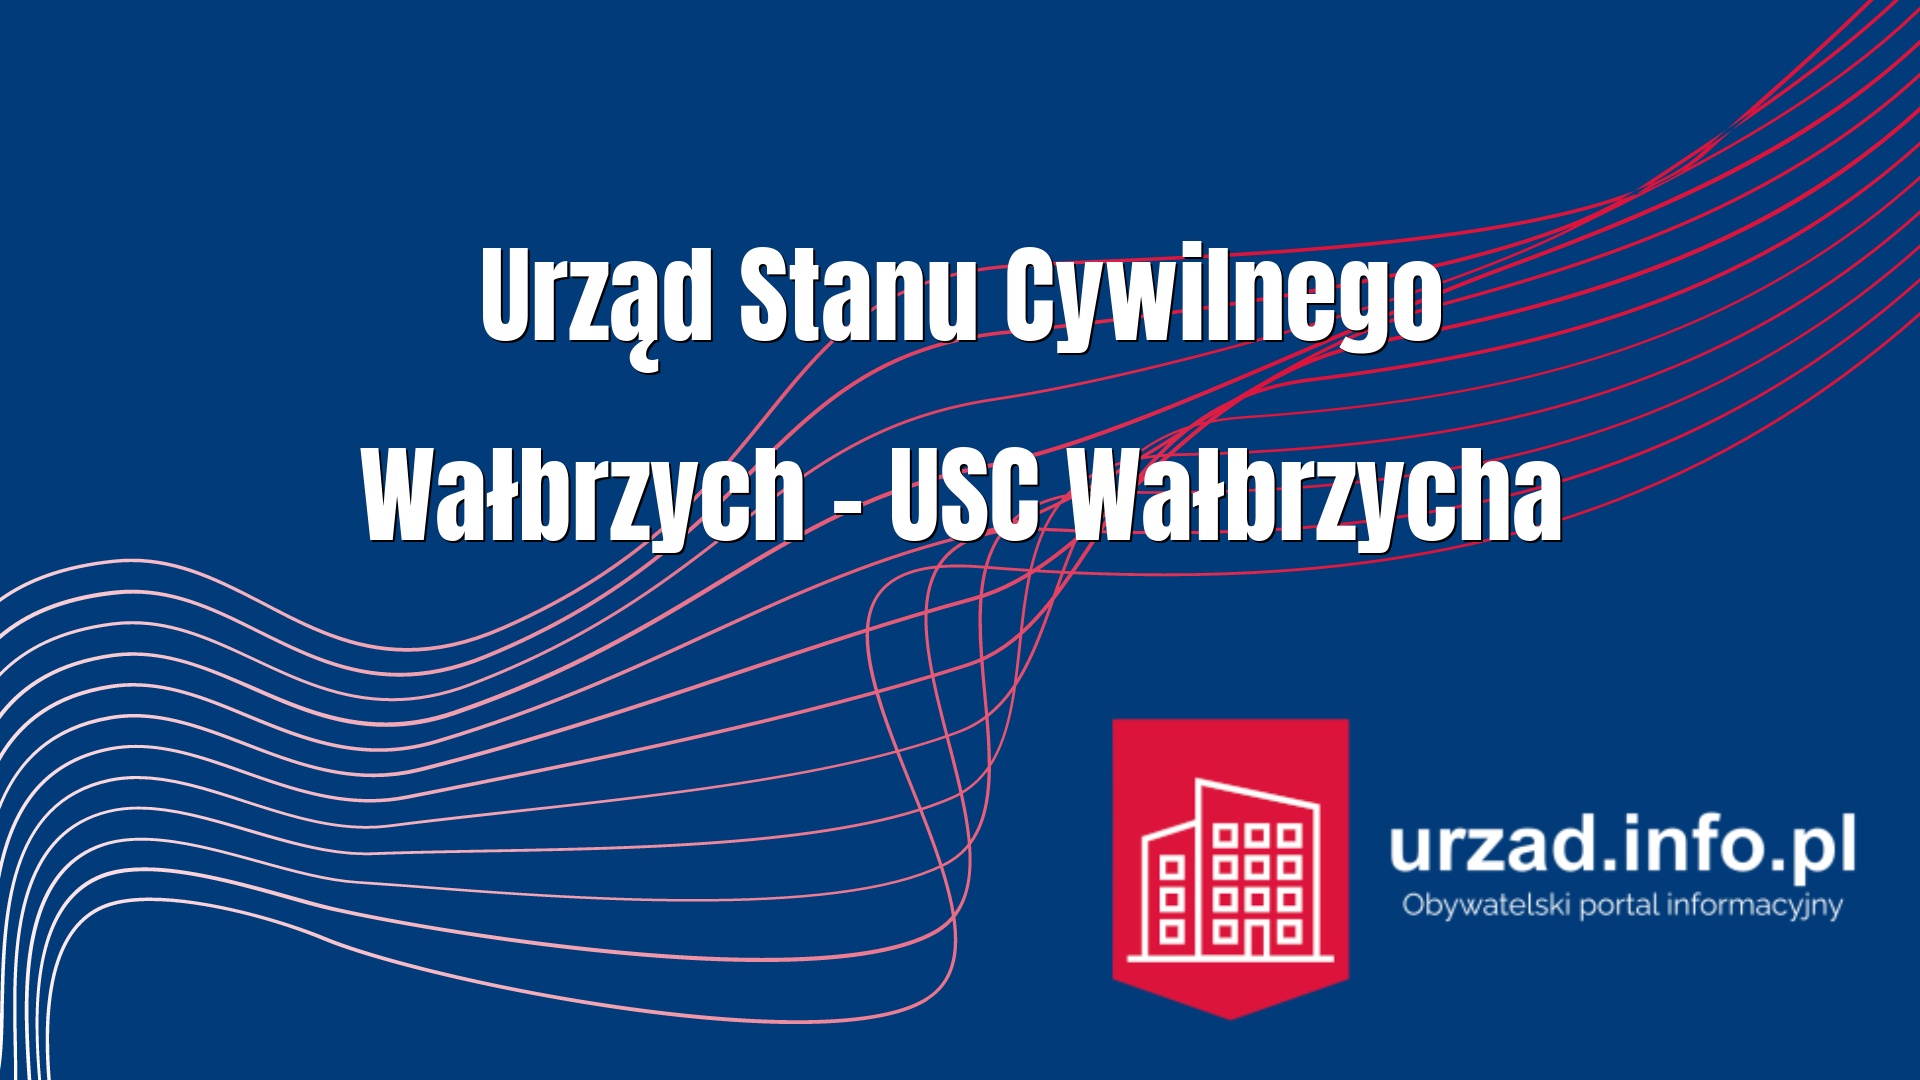 Urząd Stanu Cywilnego Wałbrzych – USC Wałbrzycha